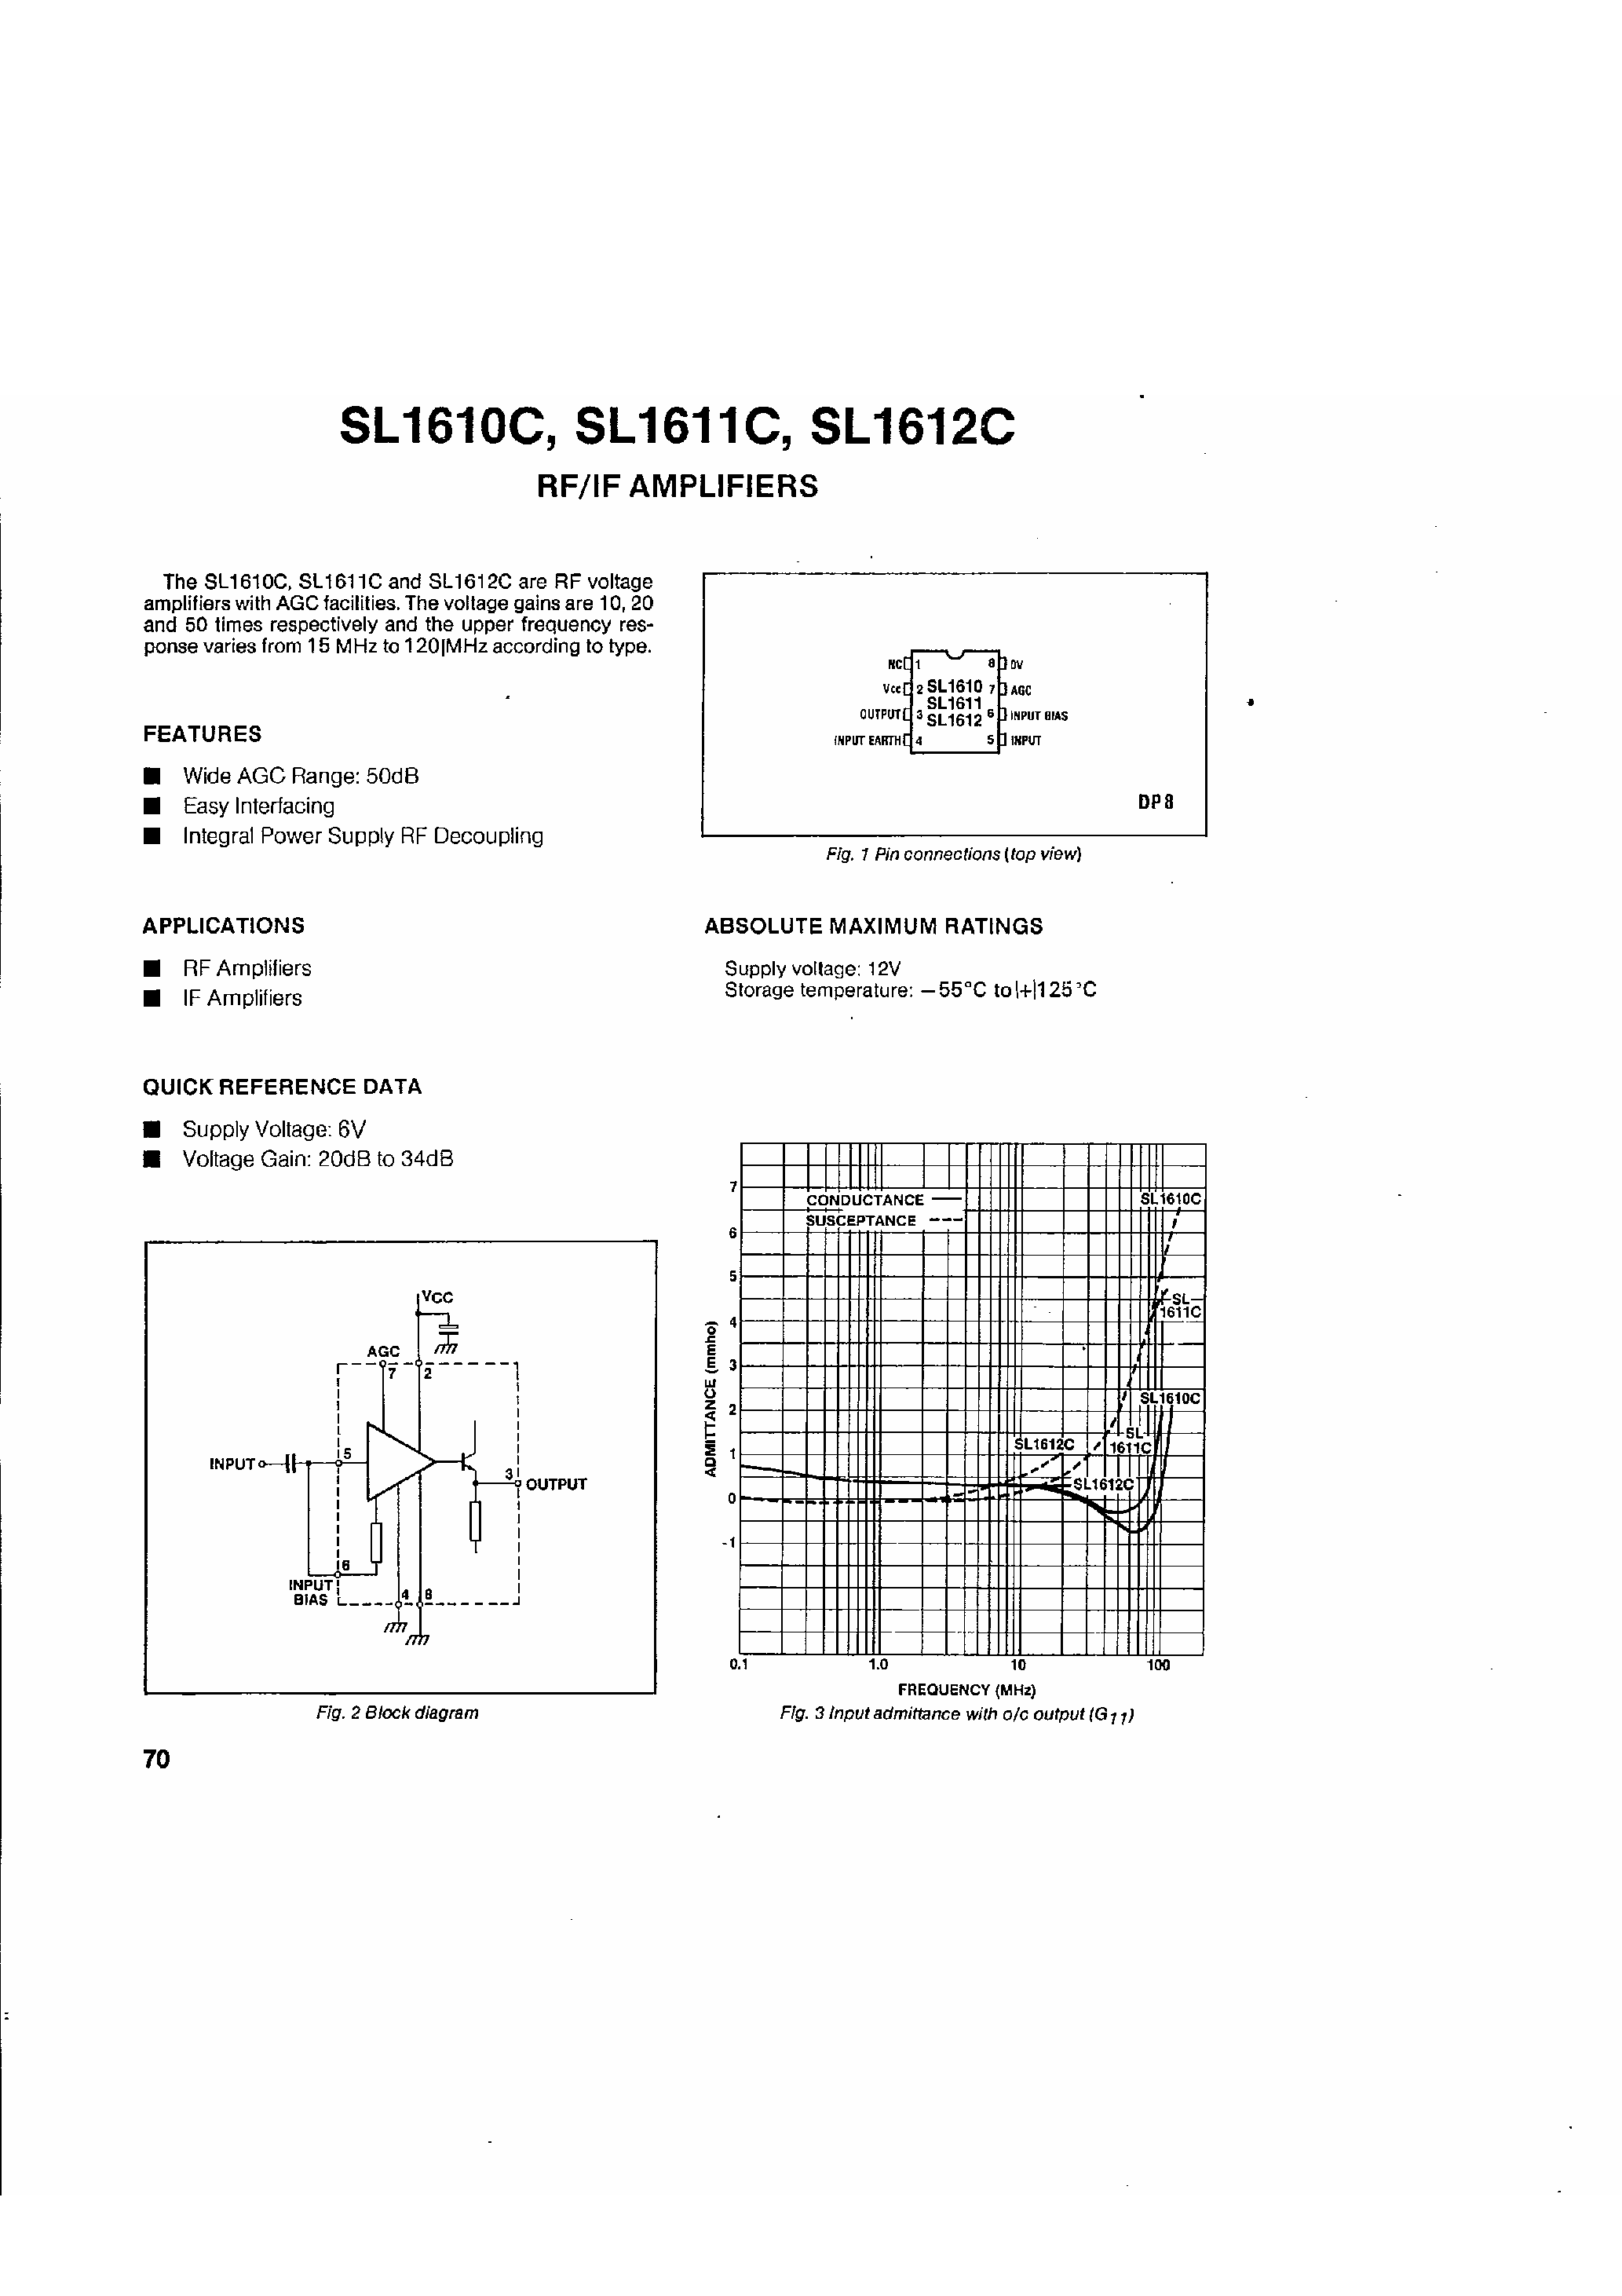 Даташит SL1612C - (SL1611C/SL1611C) RF / IF Amplifiers страница 1